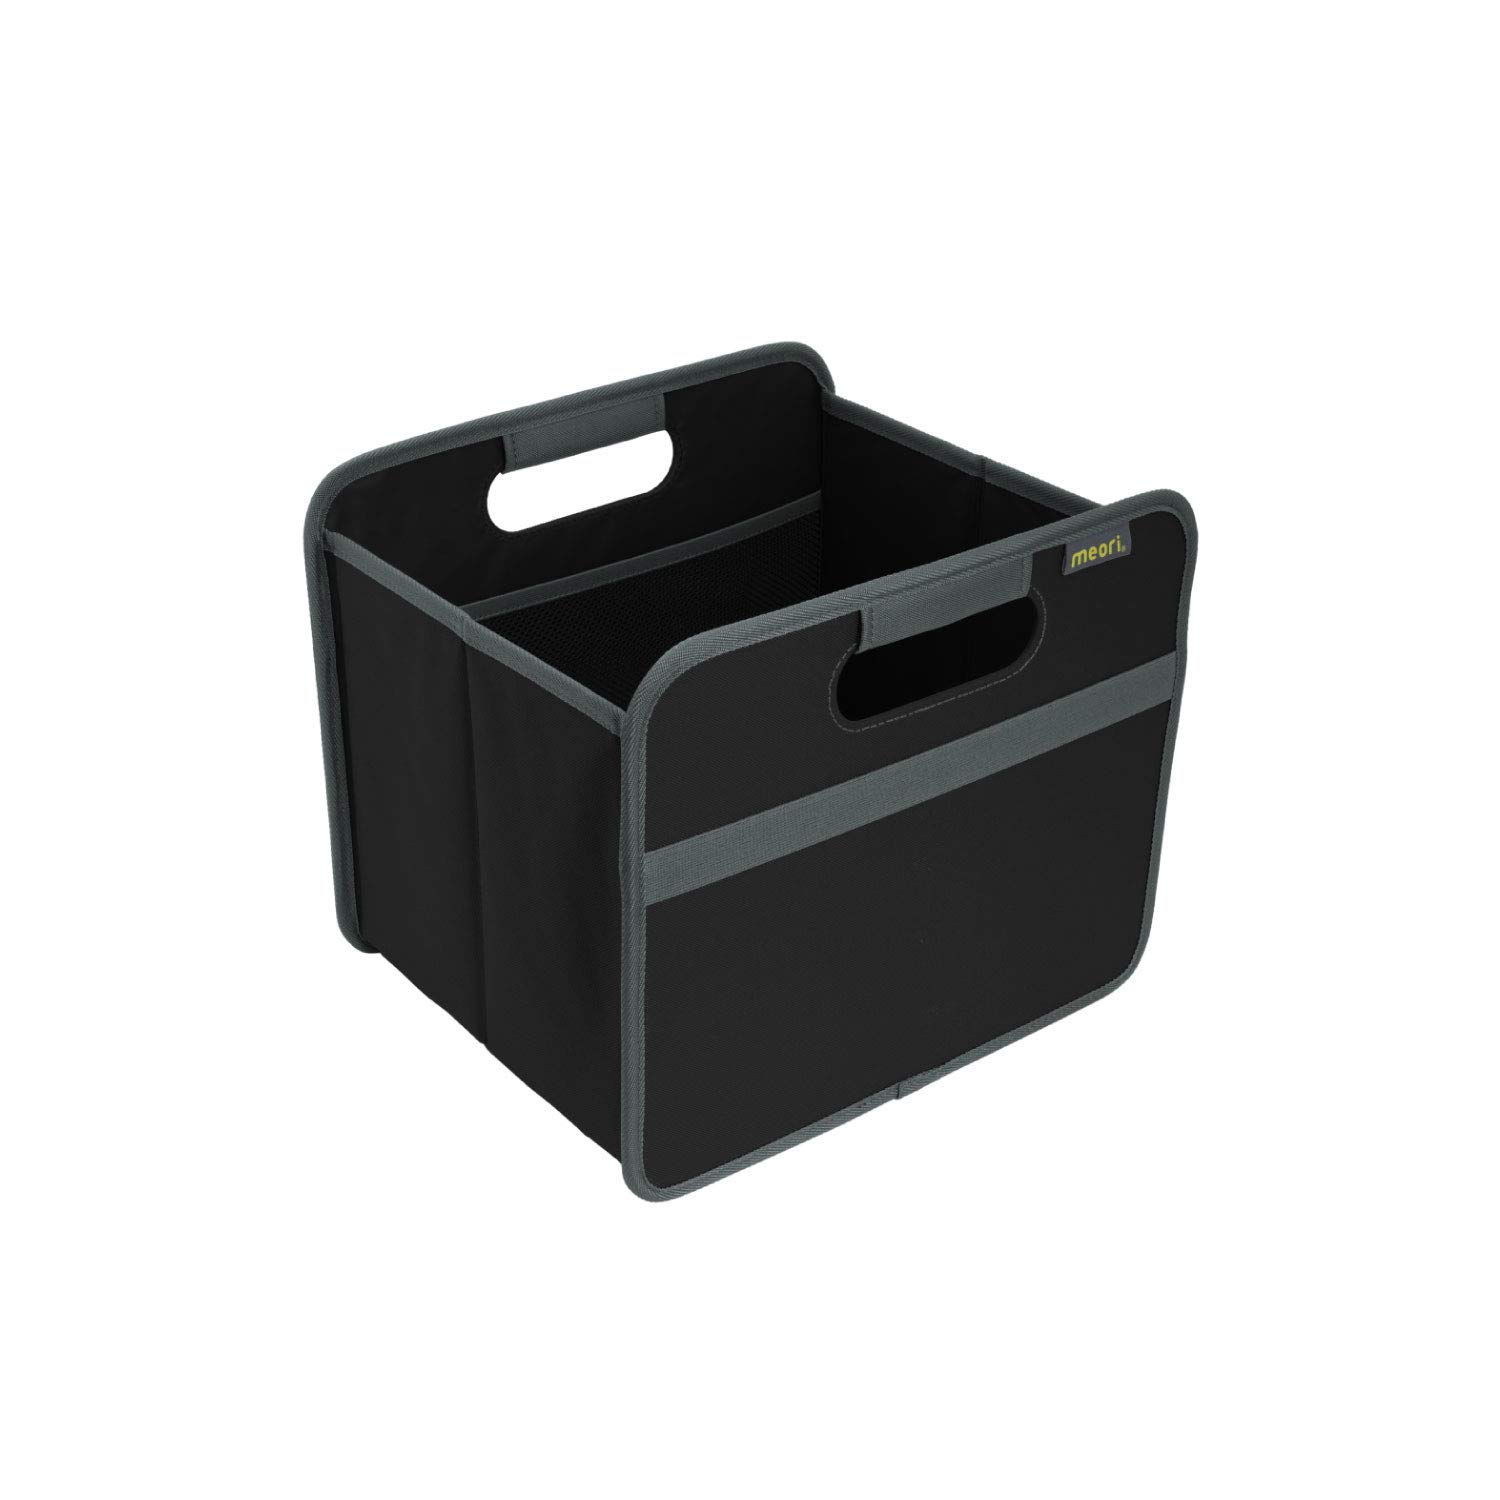 Meori Aufbewahrungsbox faltbar Traglast 30 kg - 32cm 26,5cm 27.5cm Größe S - schwarz